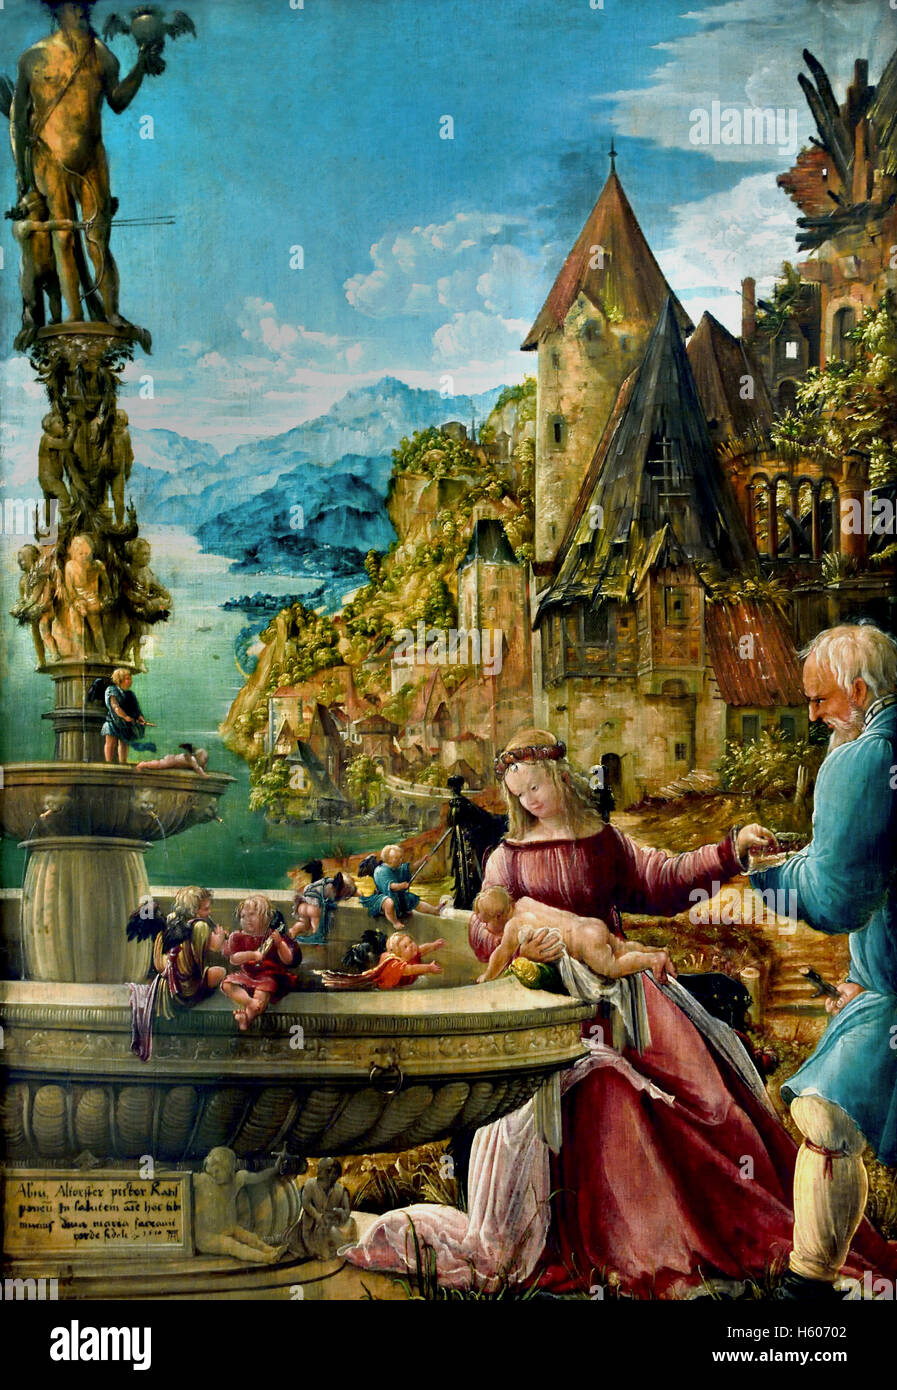 Ruhe auf der Flucht nach Ägypten - Resto sulla fuga in Egitto 1515 Albrecht Altdorfer ( 1482 - 1538, Regensburg), pittore tedesco Germania Foto Stock